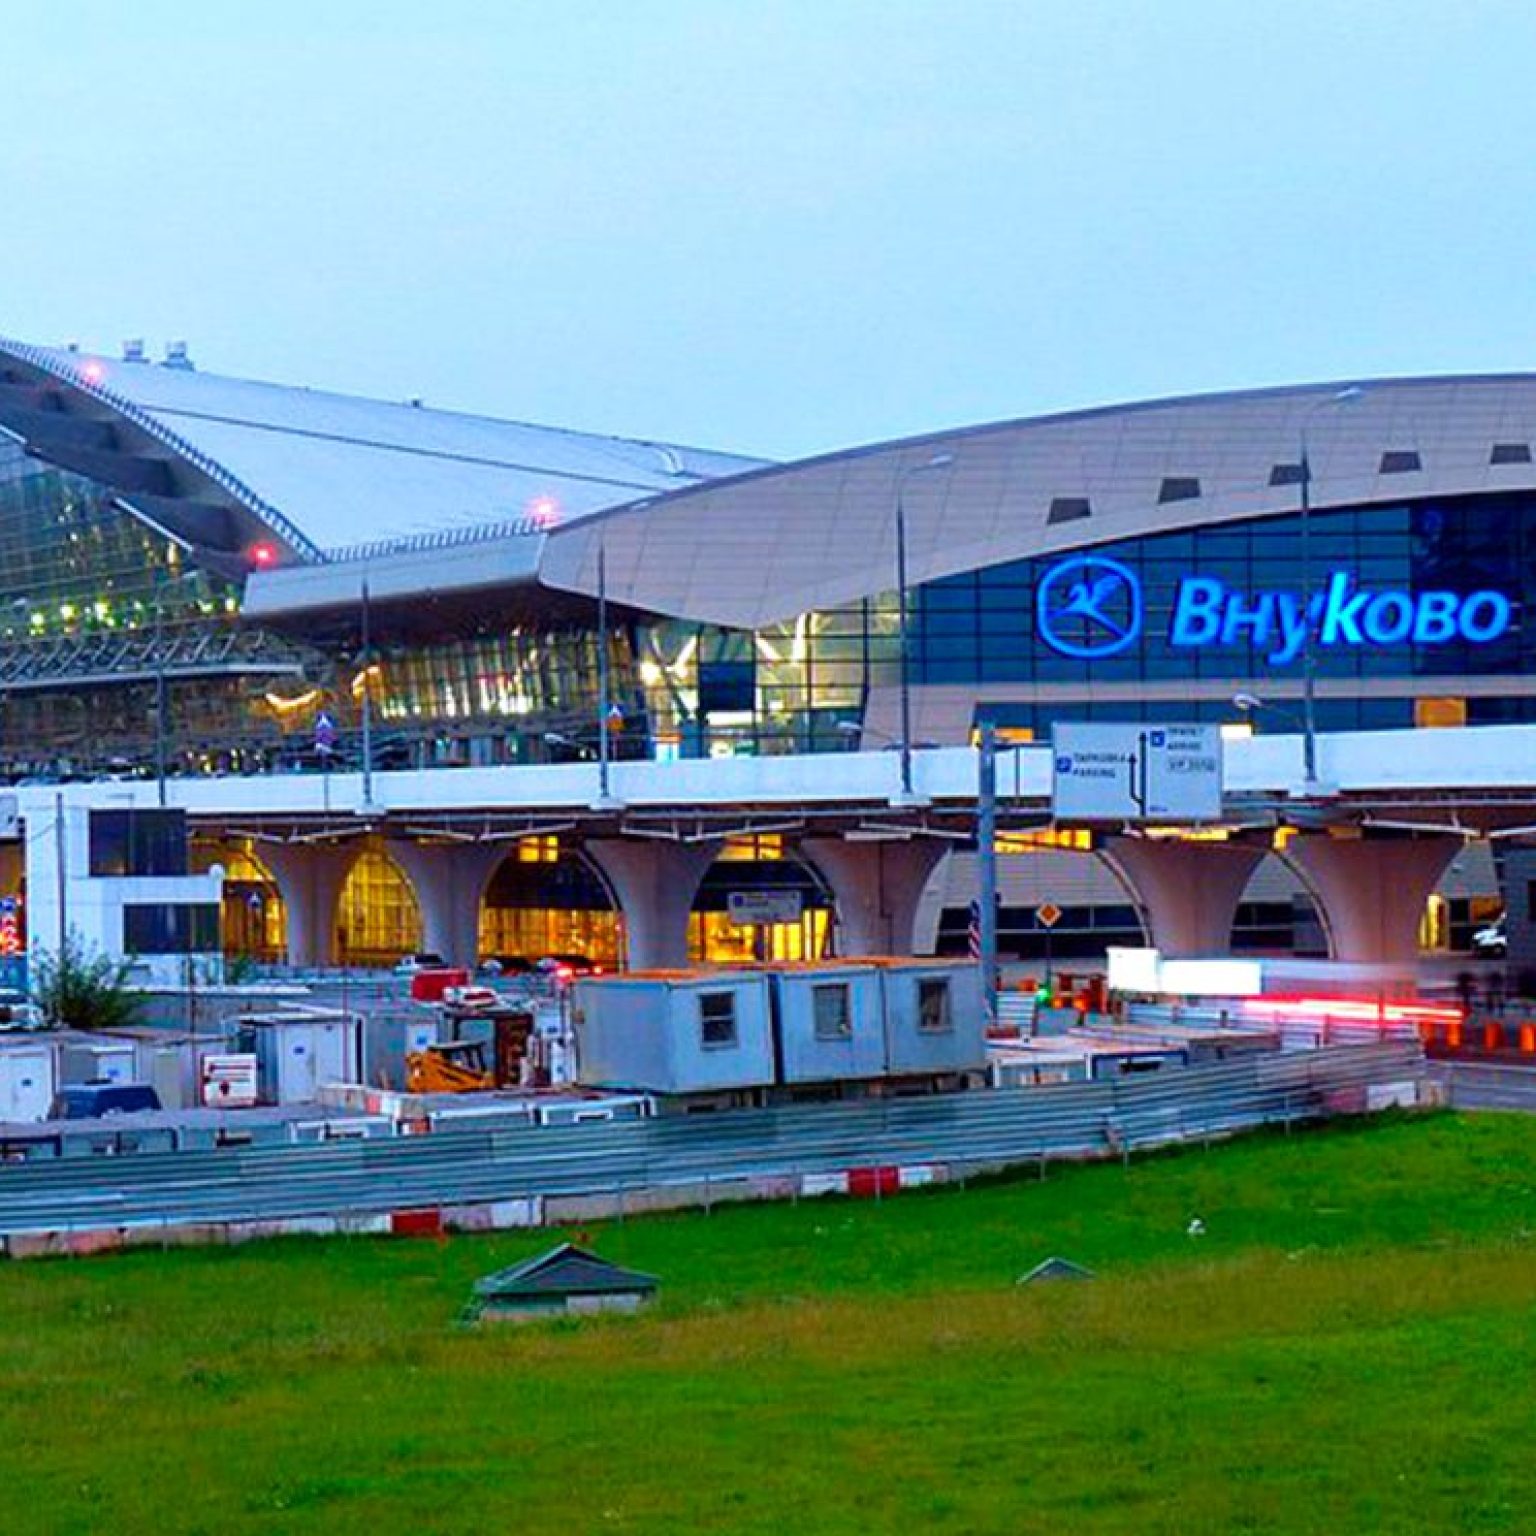 Как добраться из аэропорта Внуково - до метро, на автобусе, аэроэкспресс, такси, аренда авто